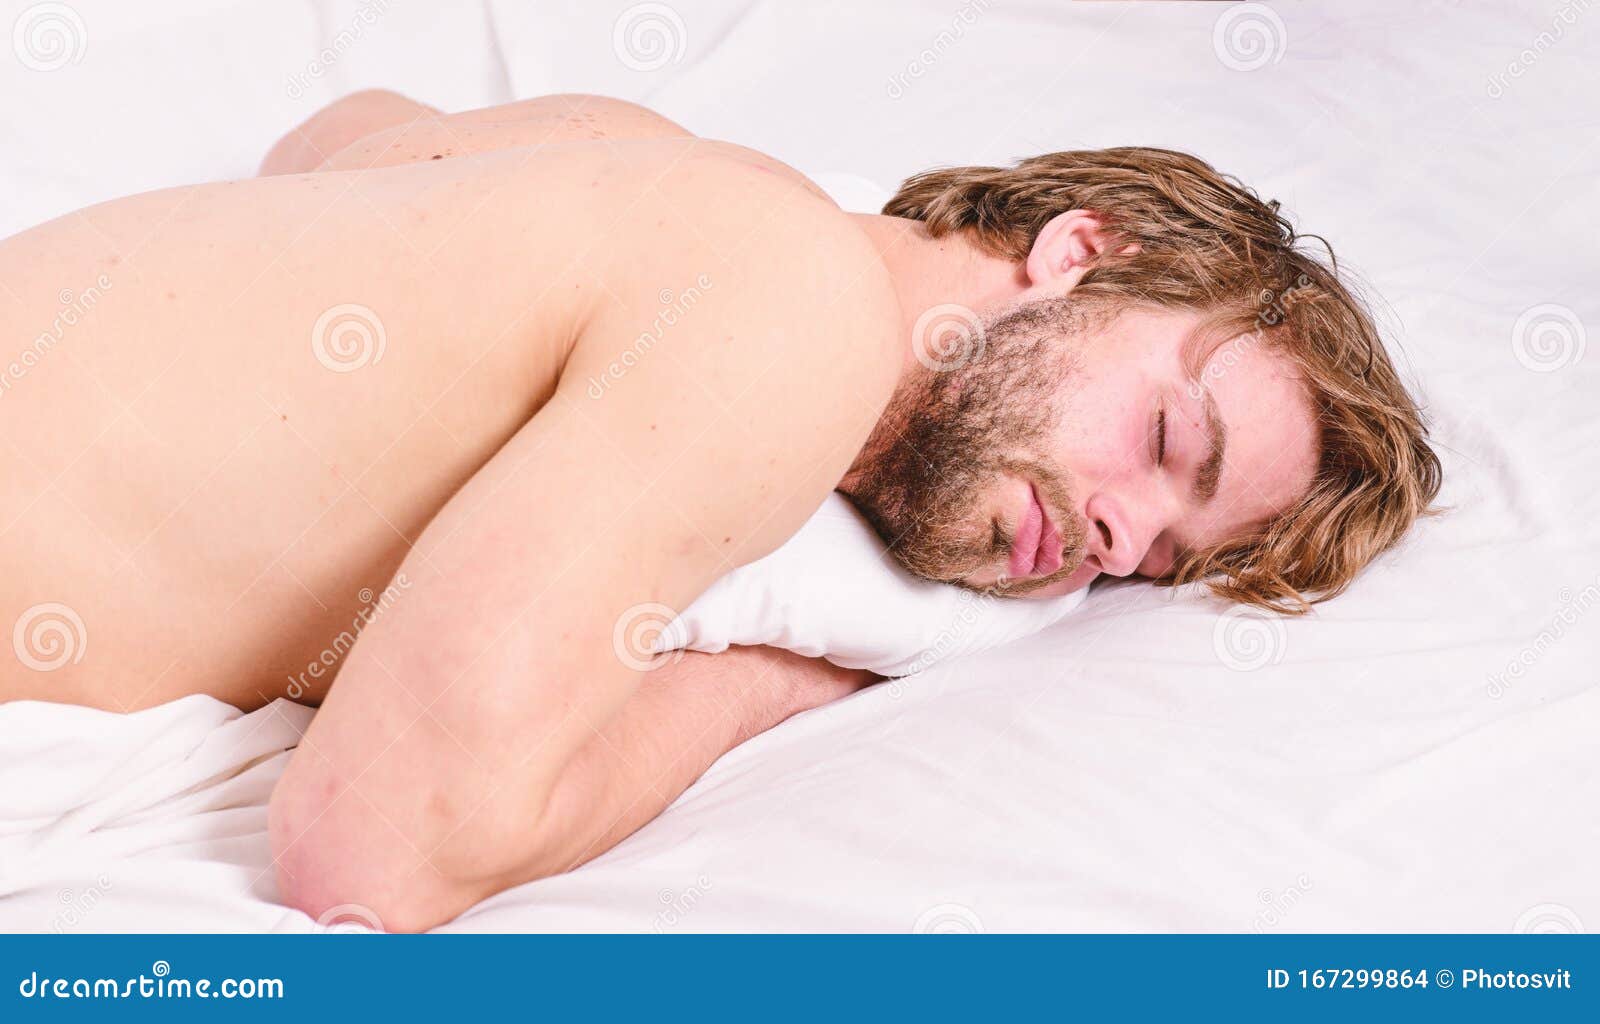 сонники толкование снов мужчина голый фото 70